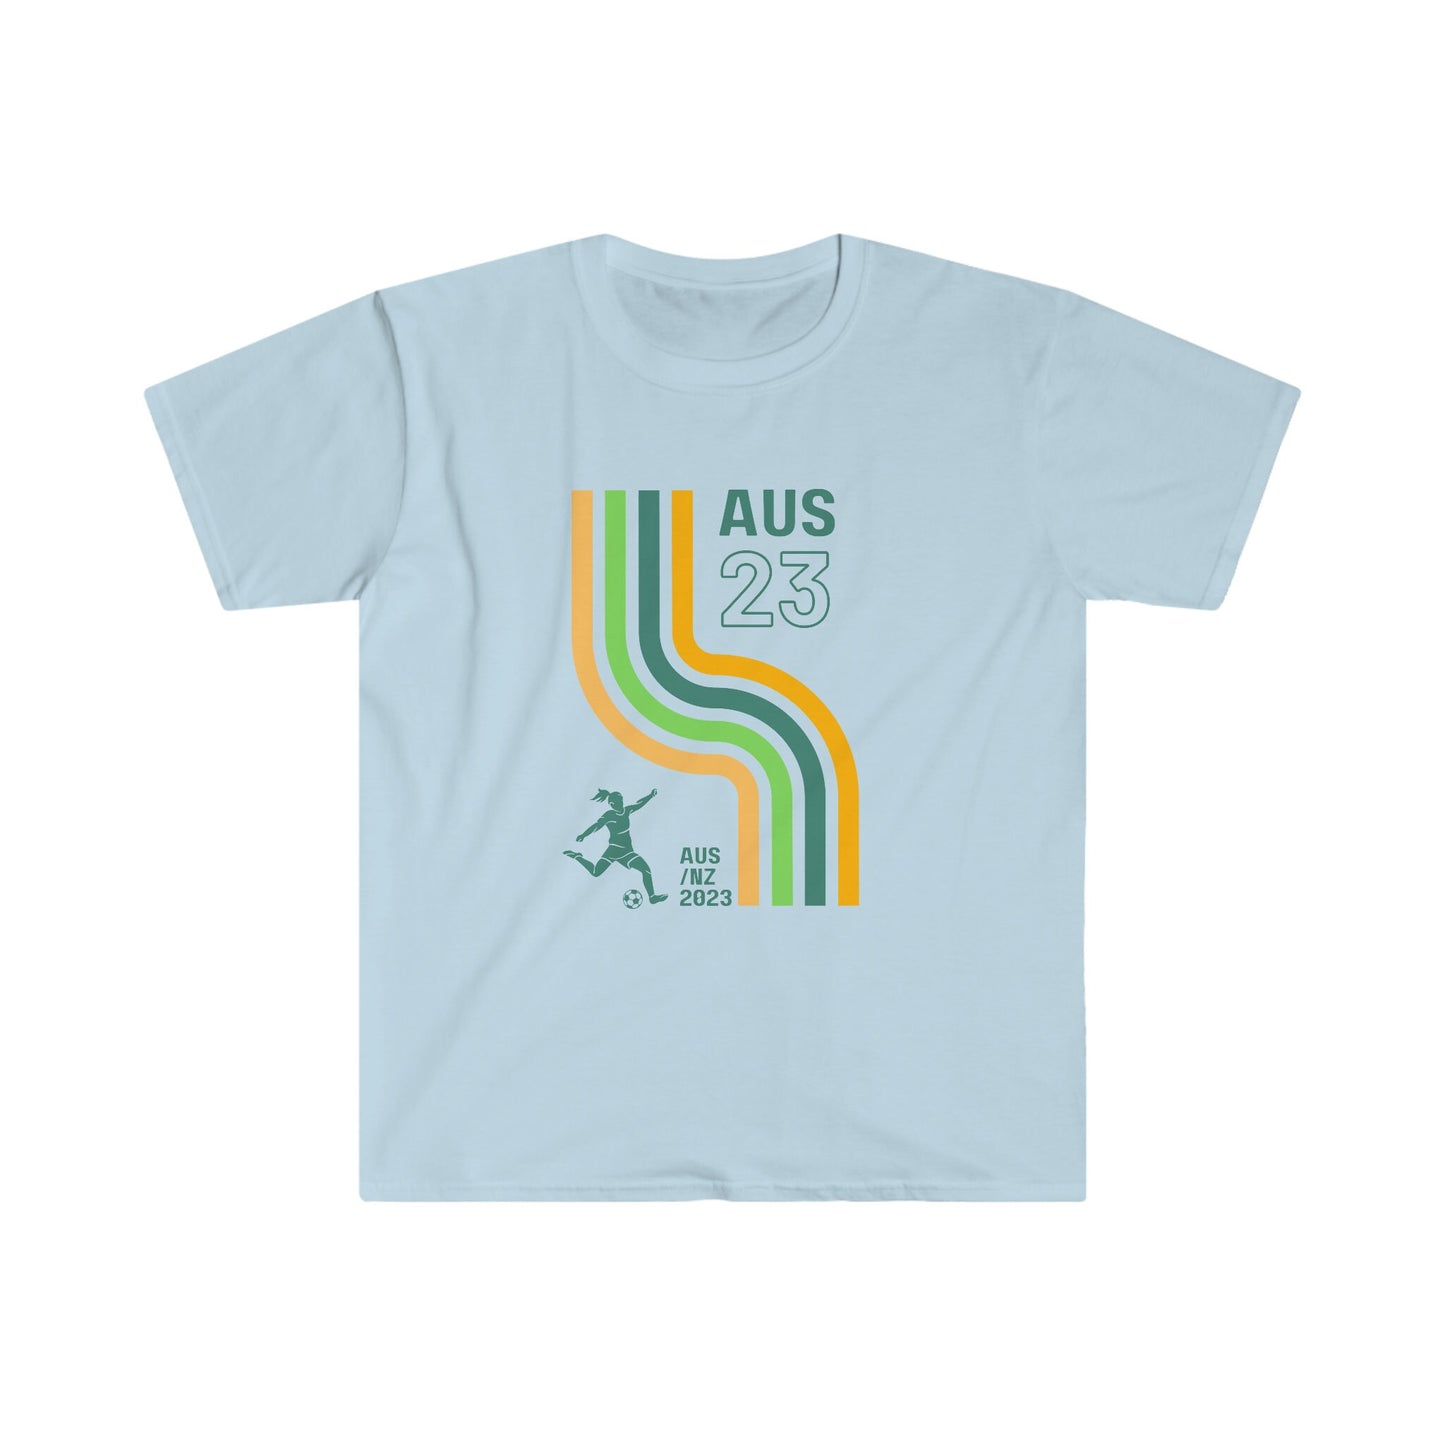 Australian Women's World Cup Supporter T-Shirt, Matilda's Soccer Shirt, Women's football, Women's FIFA, Retro Front Print, Aussie Sport gift